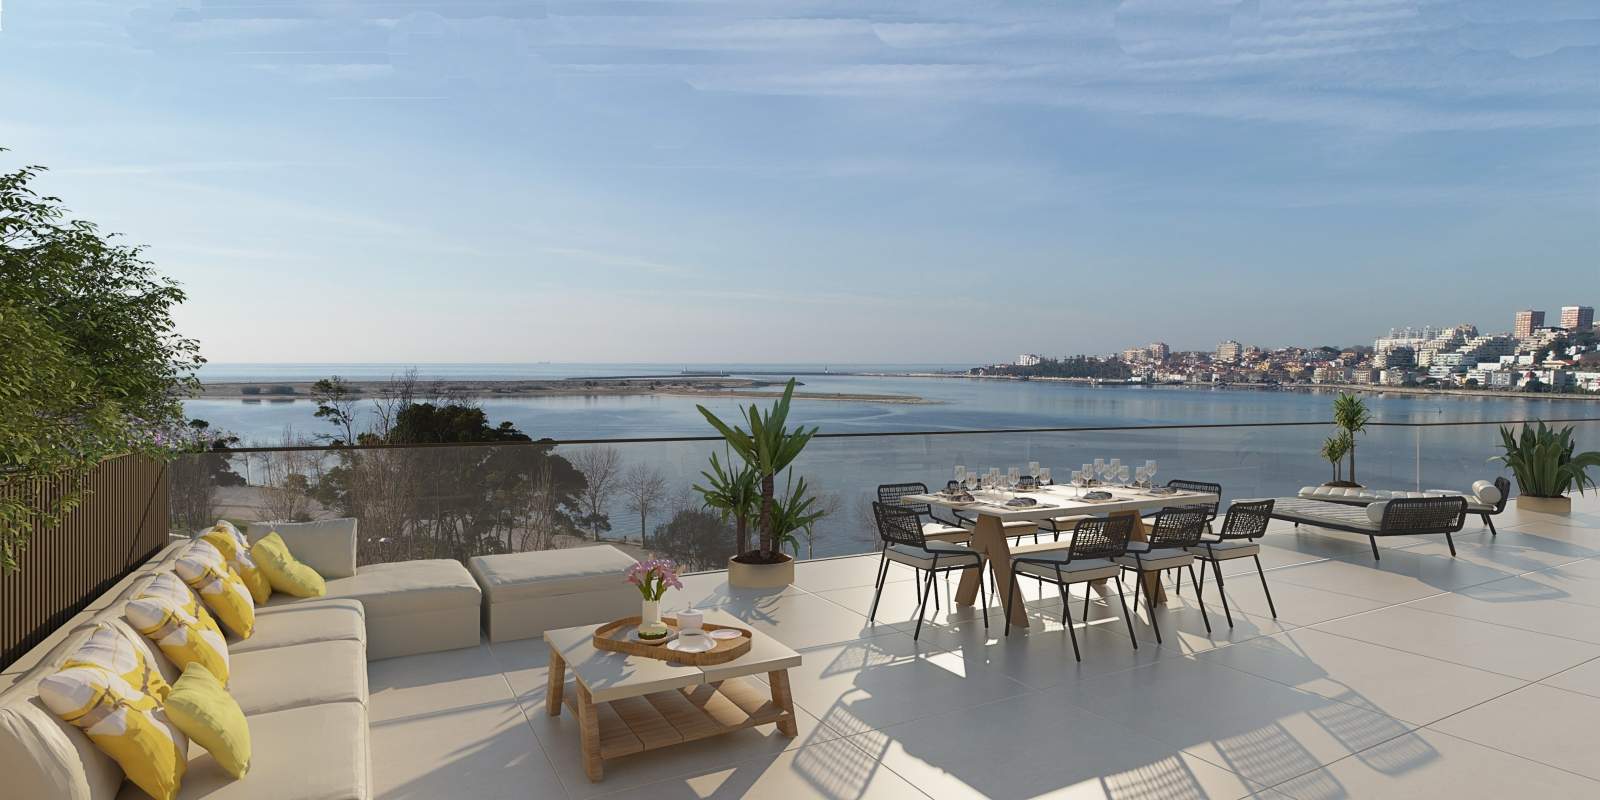 Wohnung zu verkaufen mit balkon, in Wohnanlage, V. N. Gaia, Portugal_175317